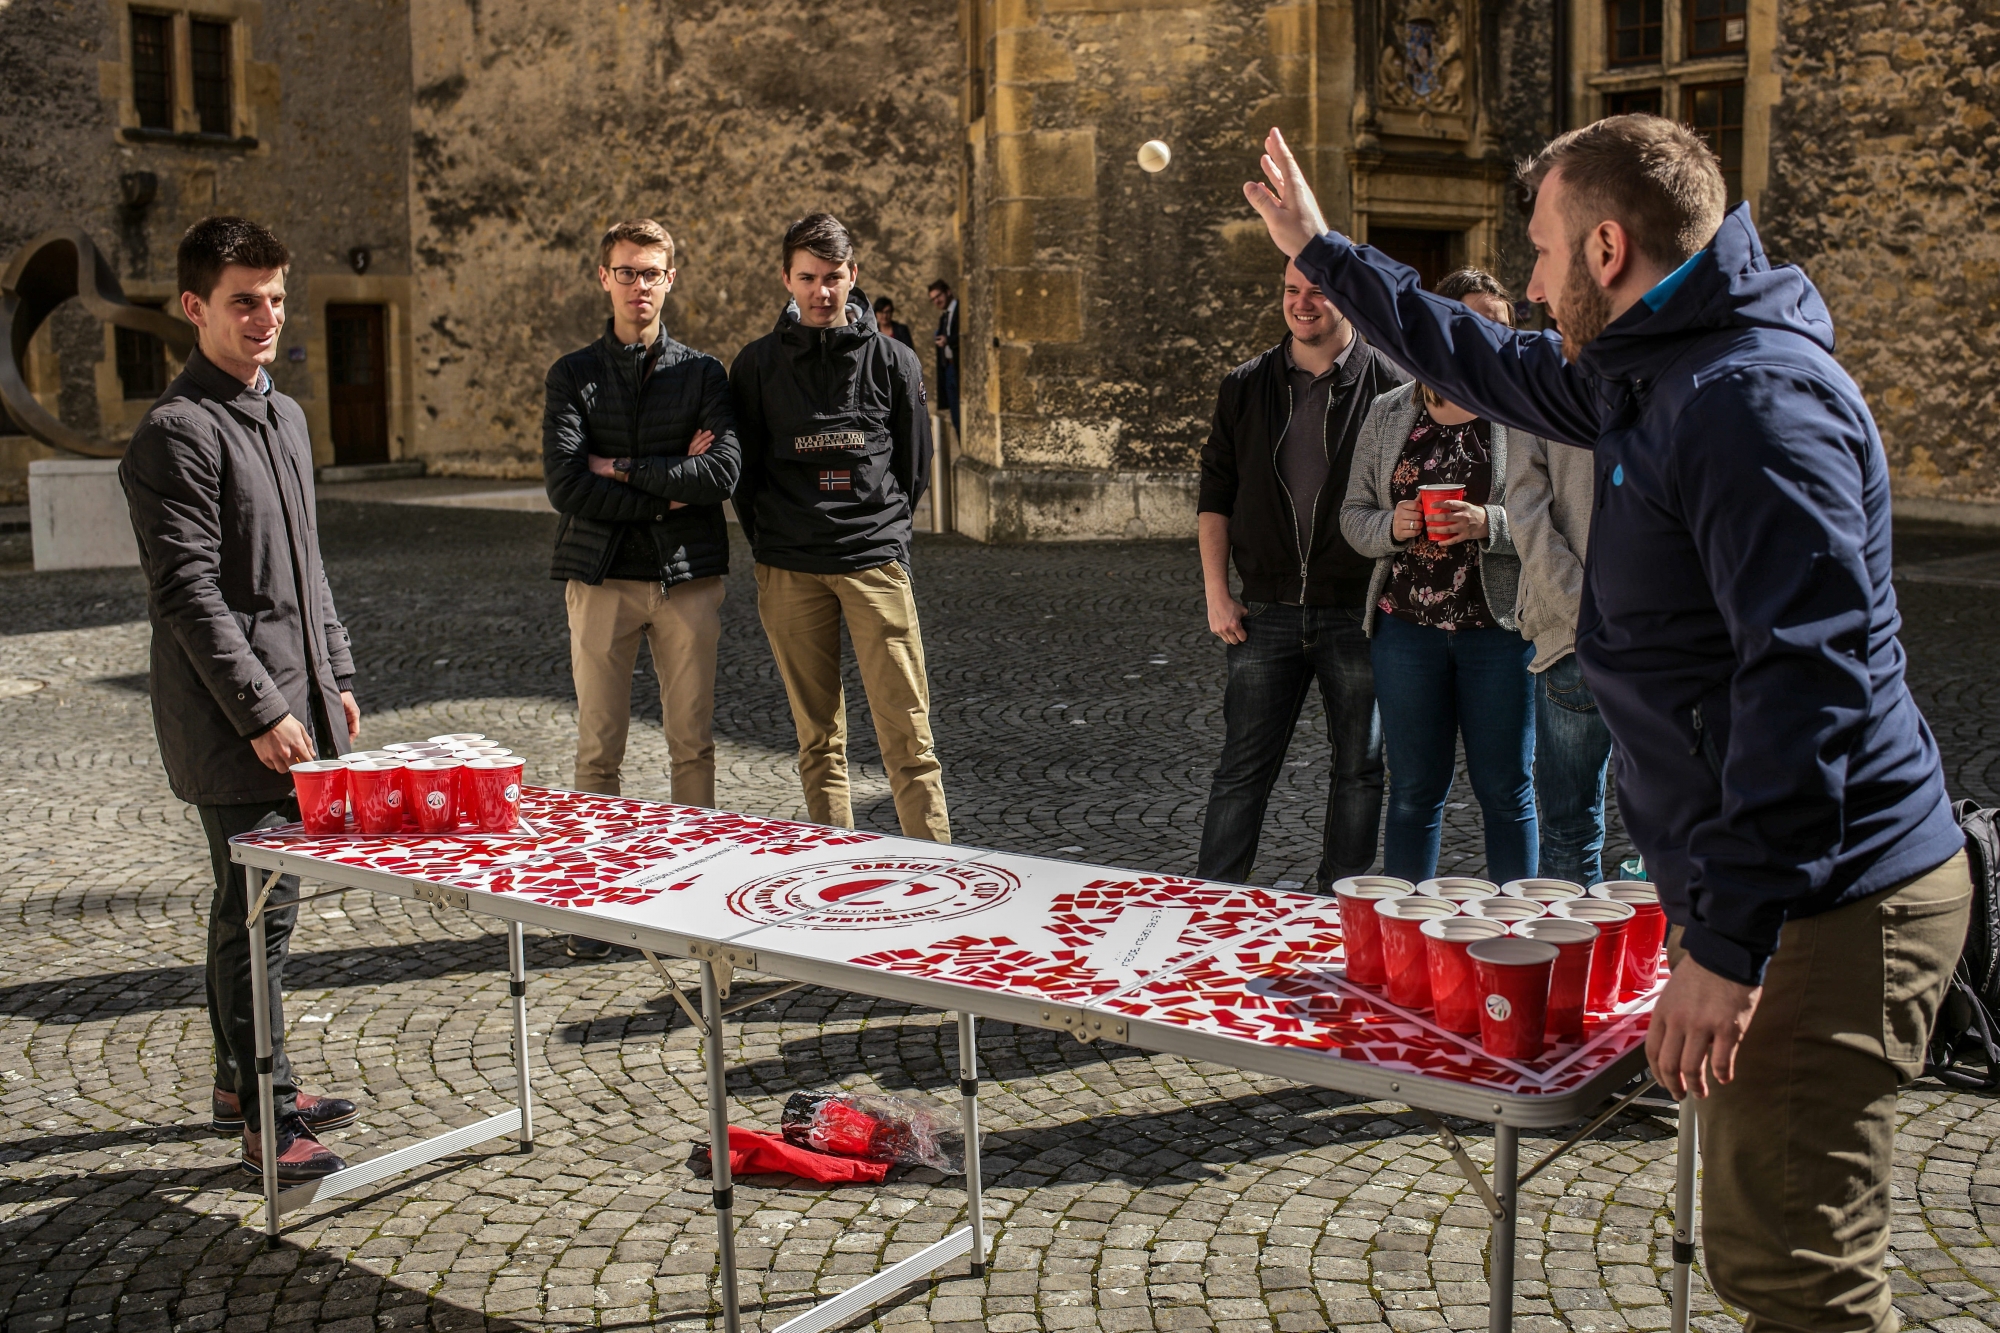 Les Jeunes libéraux-radicaux ont joué au beer pong dans la cour du Château.